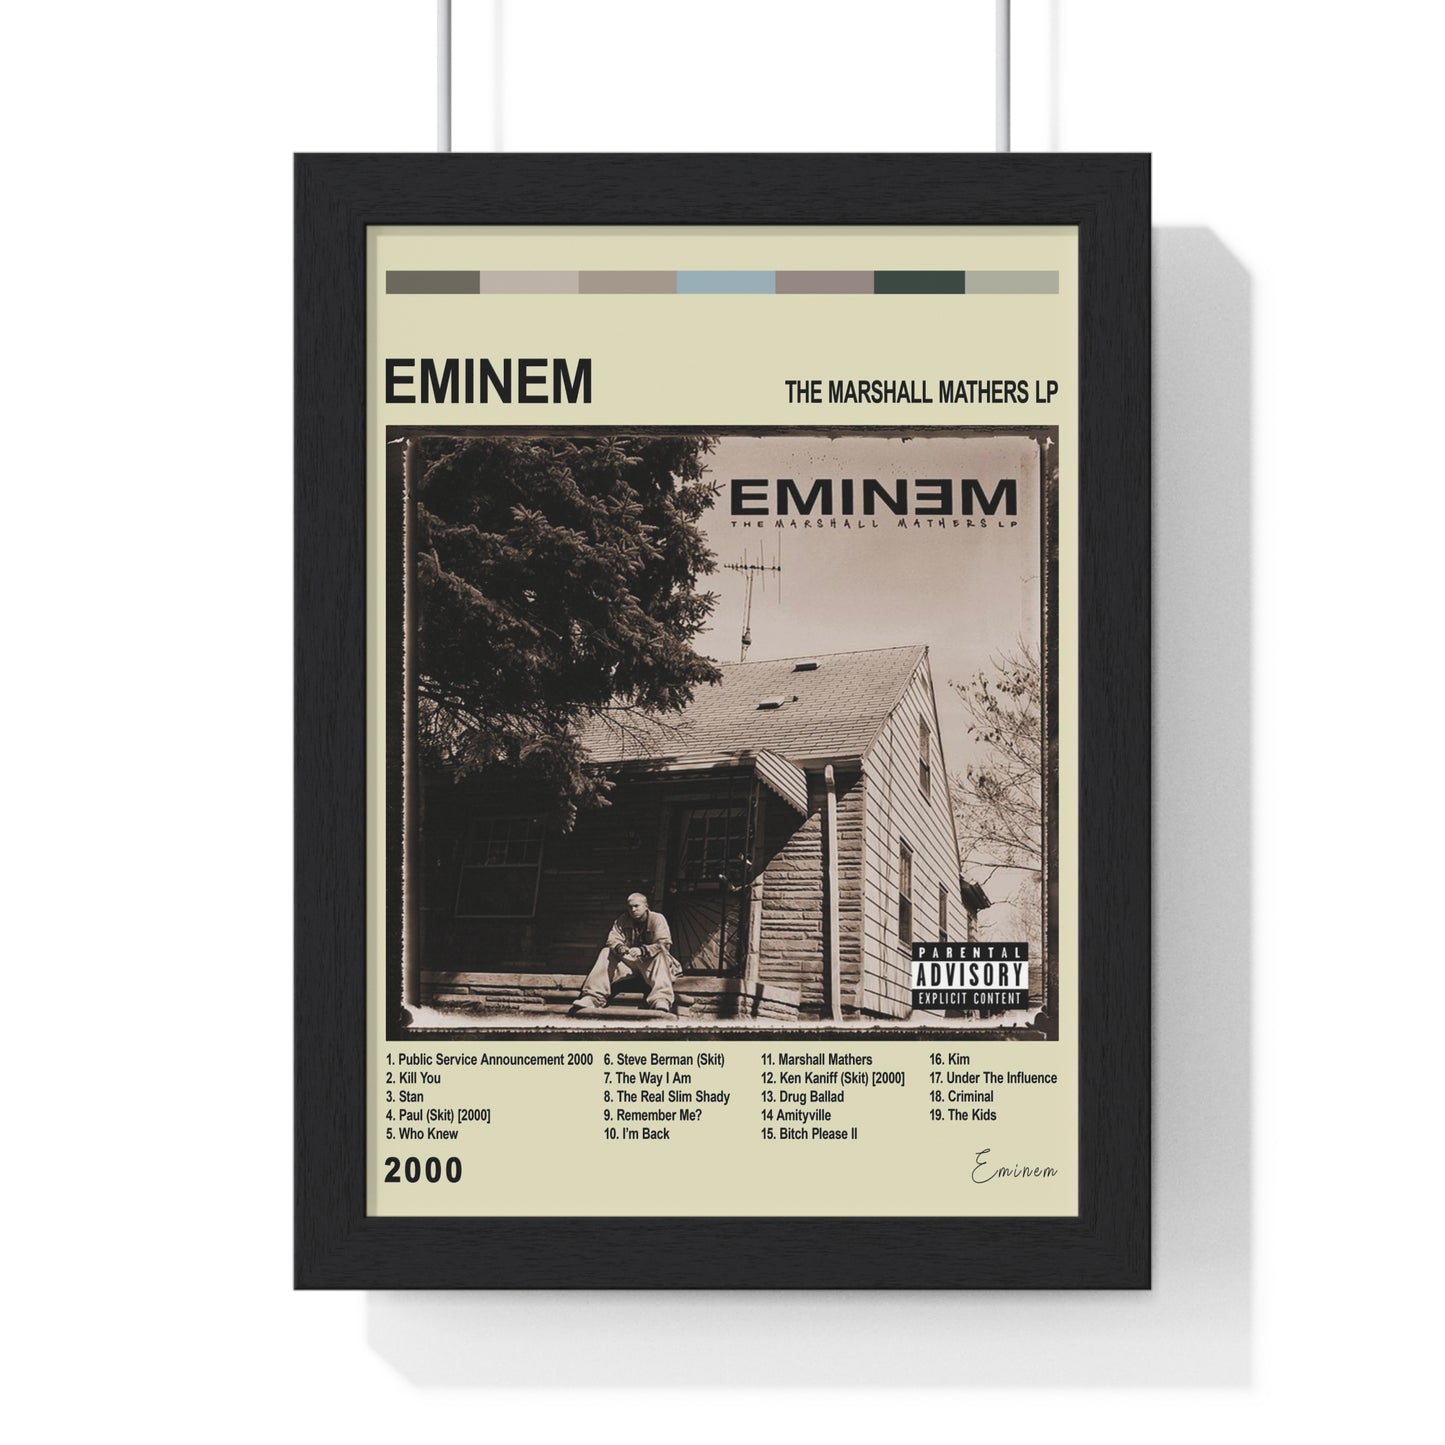 Eminem Album Cover Poster